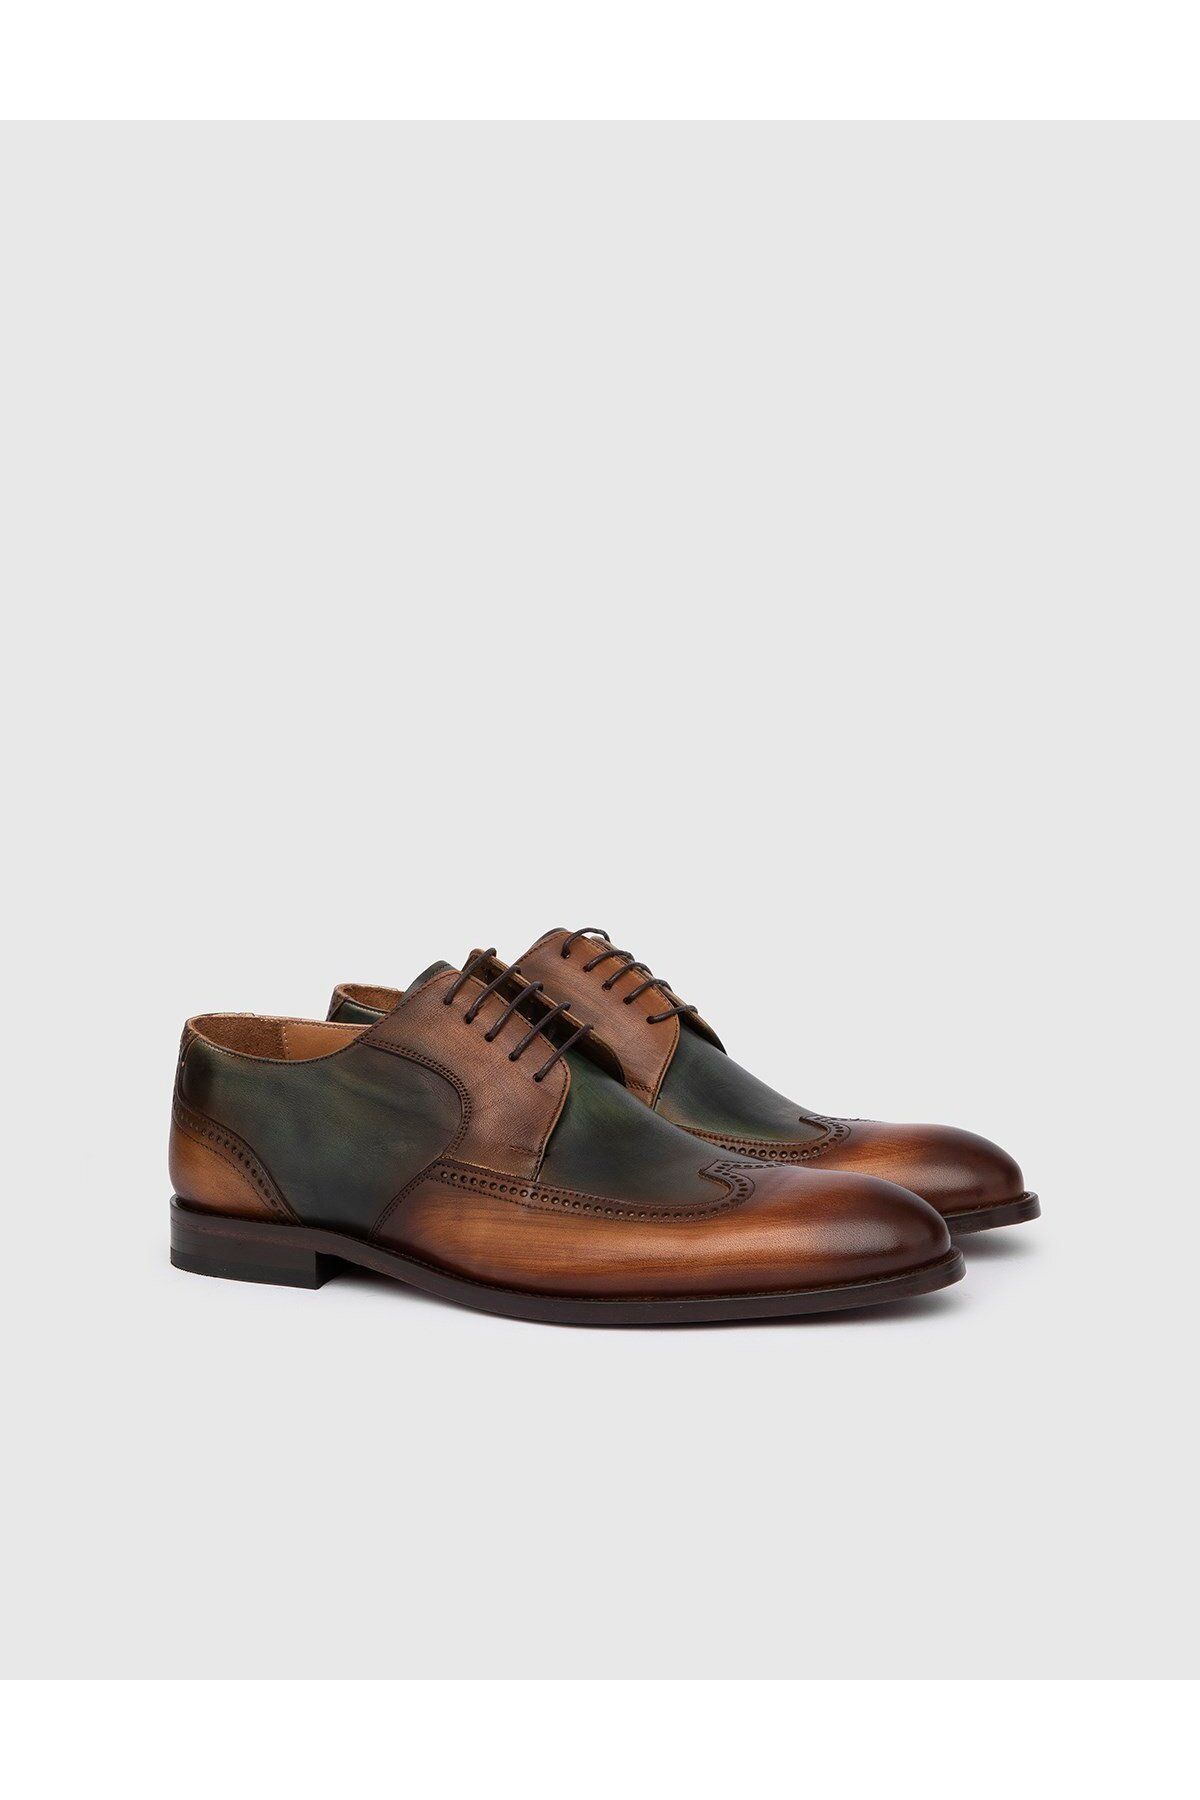 İlvi Asta Hakiki Deri Erkek Taba Yeşil Klasik Ayakkabı